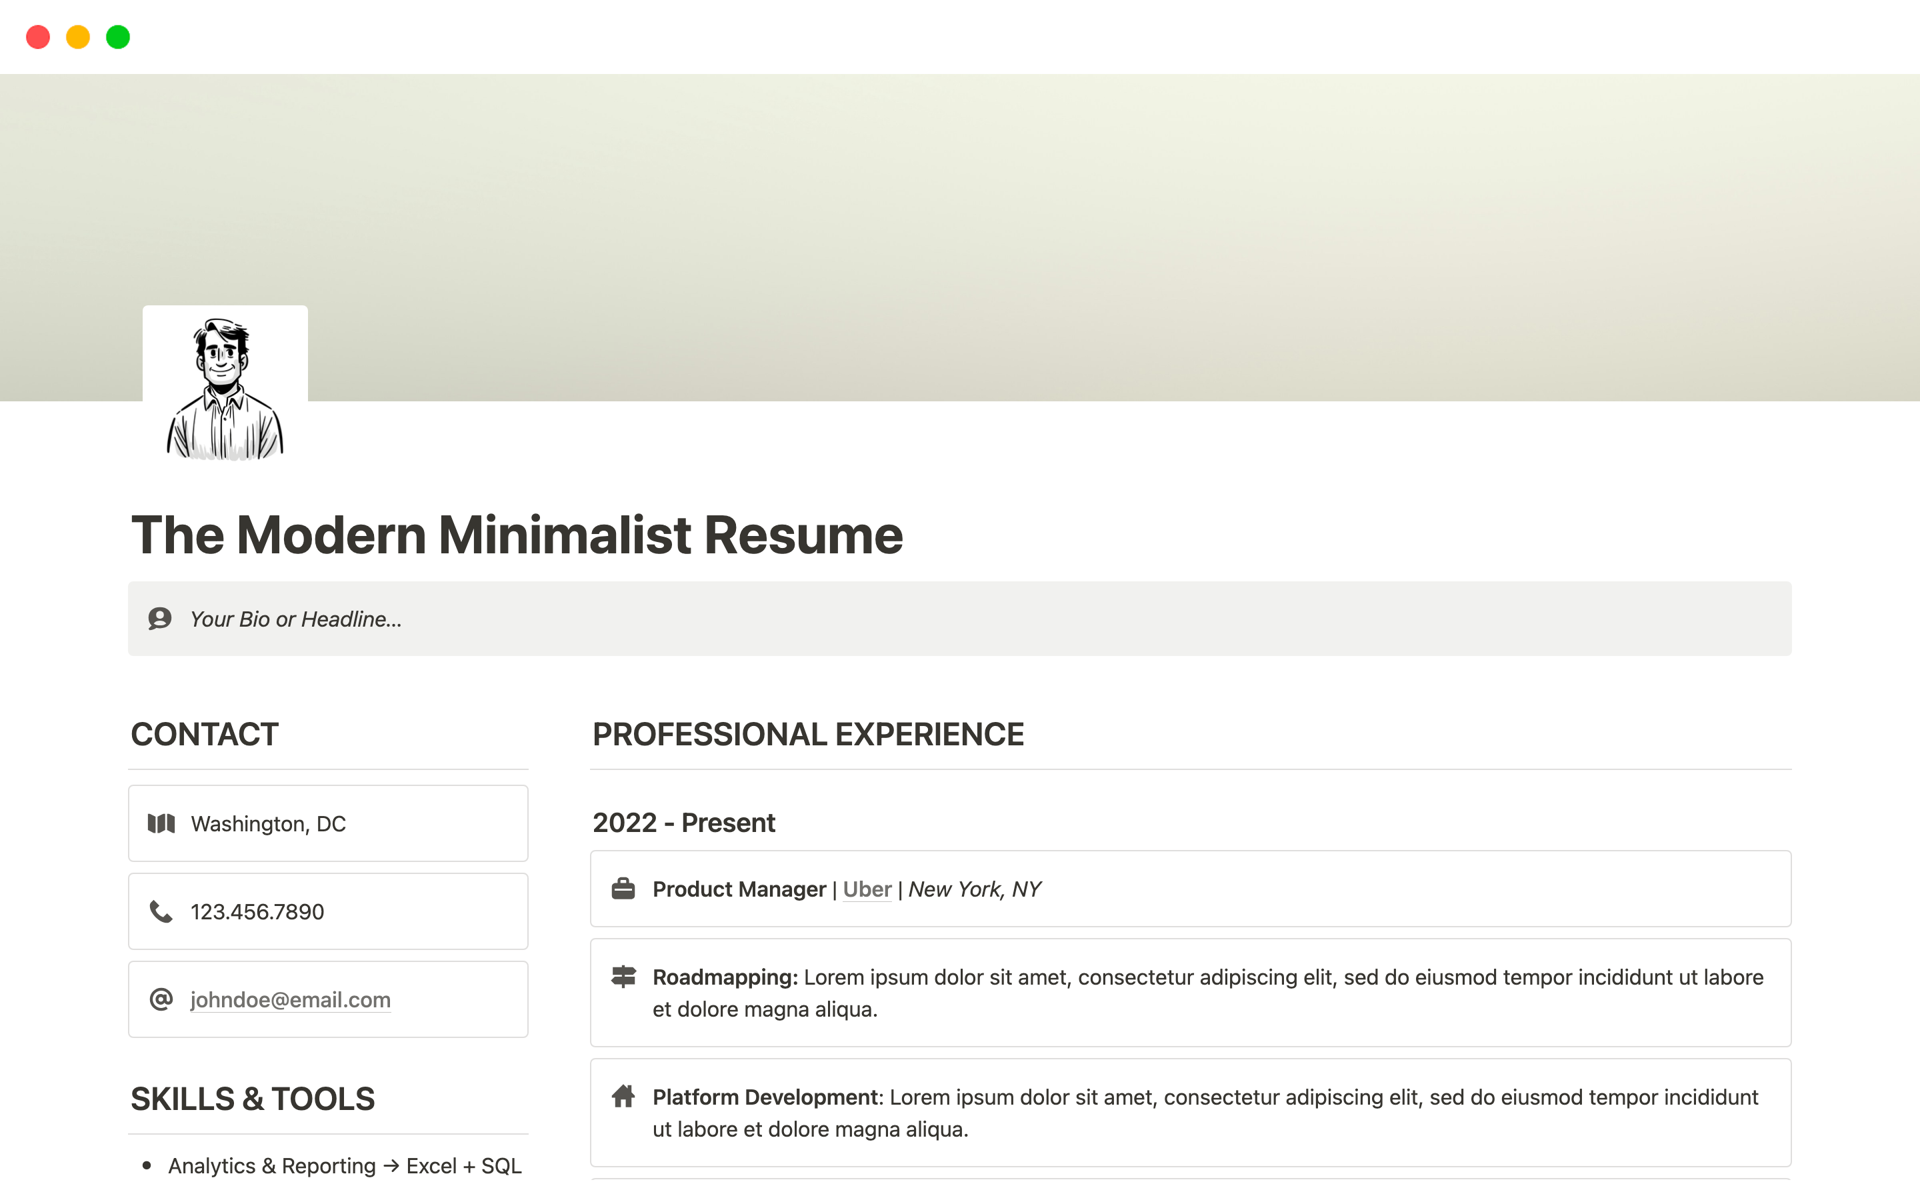 En förhandsgranskning av mallen för The Modern Minimalist Resume